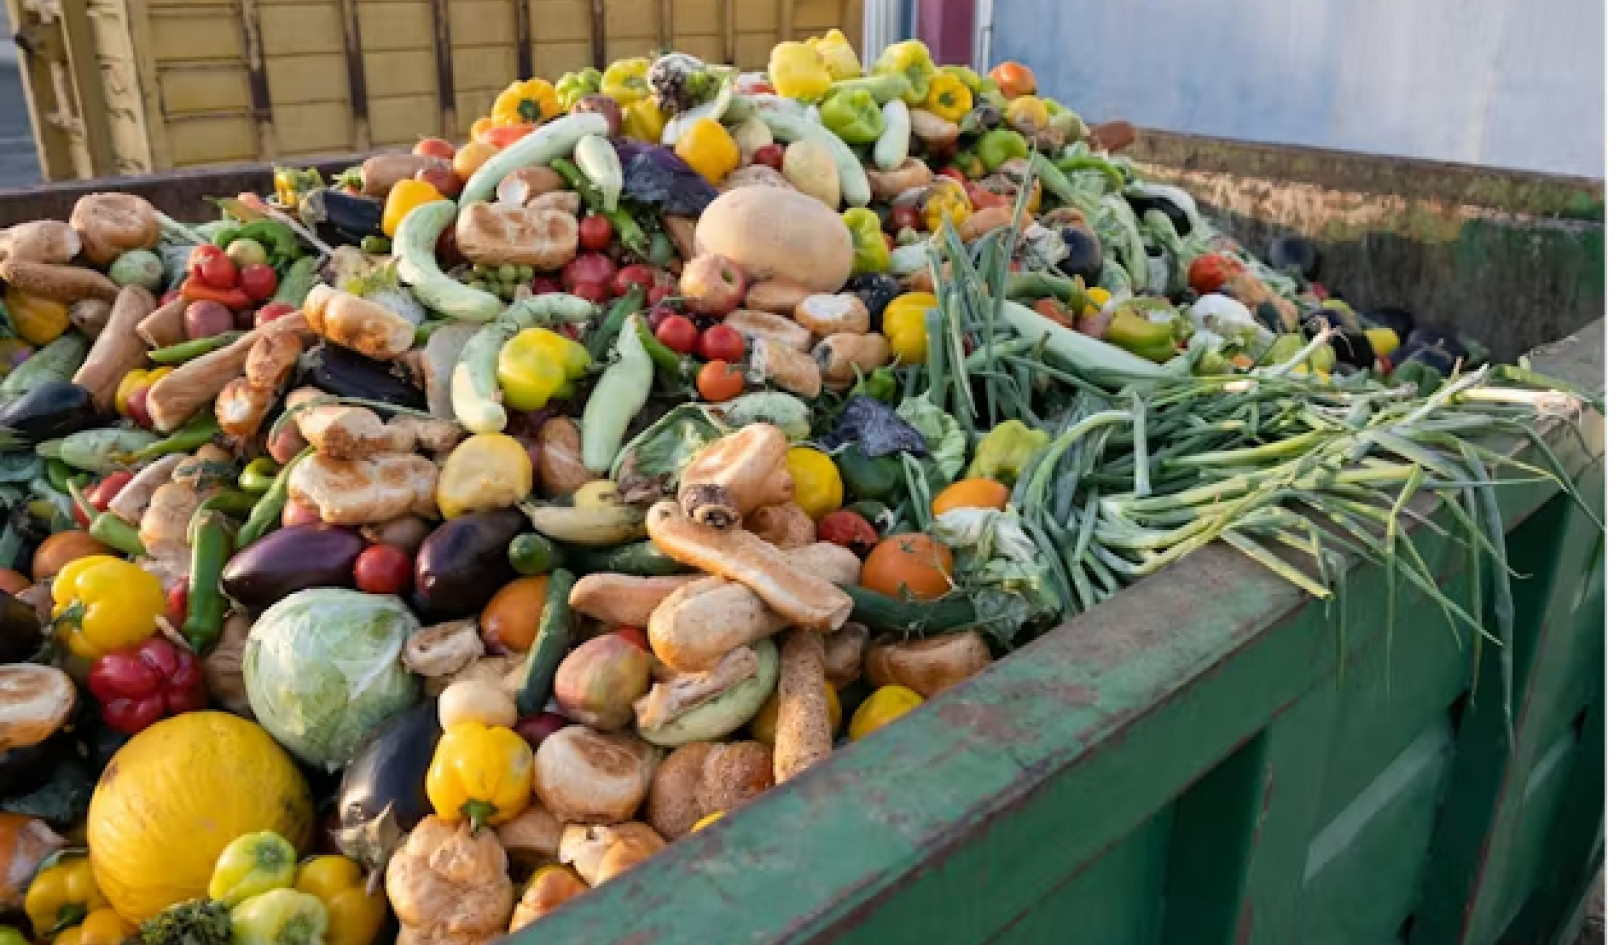 भोजन की बर्बादी को कम करने के लिए 4 प्रभावी रणनीतियाँ